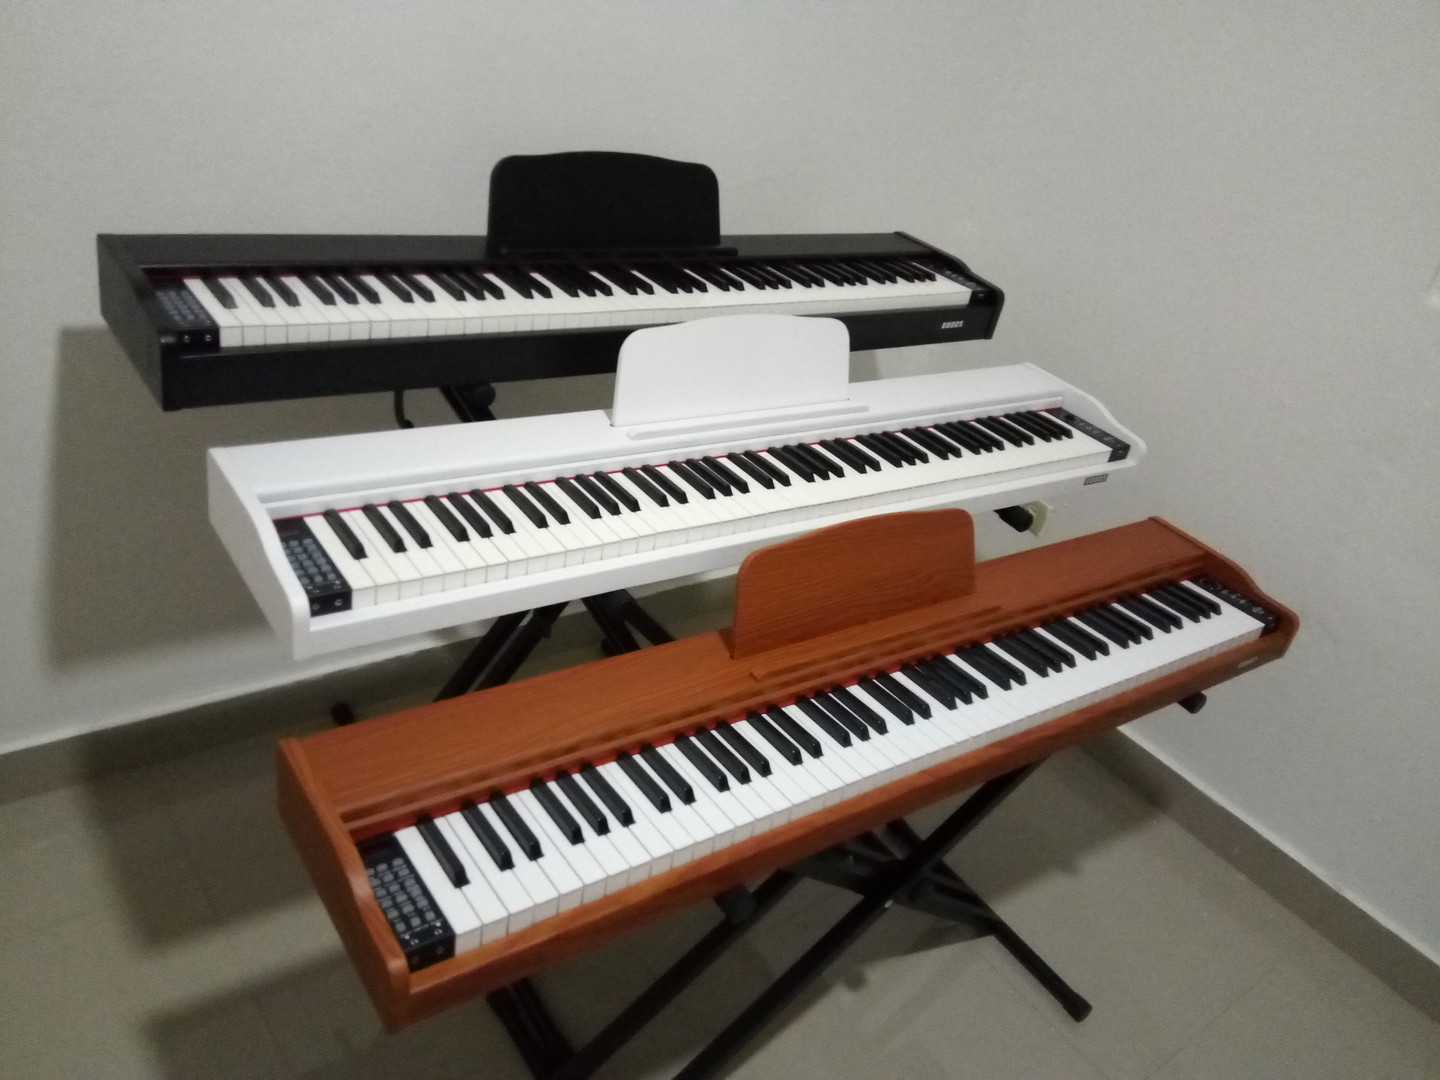 instrumentos musicales - PIANO 7 OCTAVAS 88 TECLAS USB 900 SONIDOS !!!
